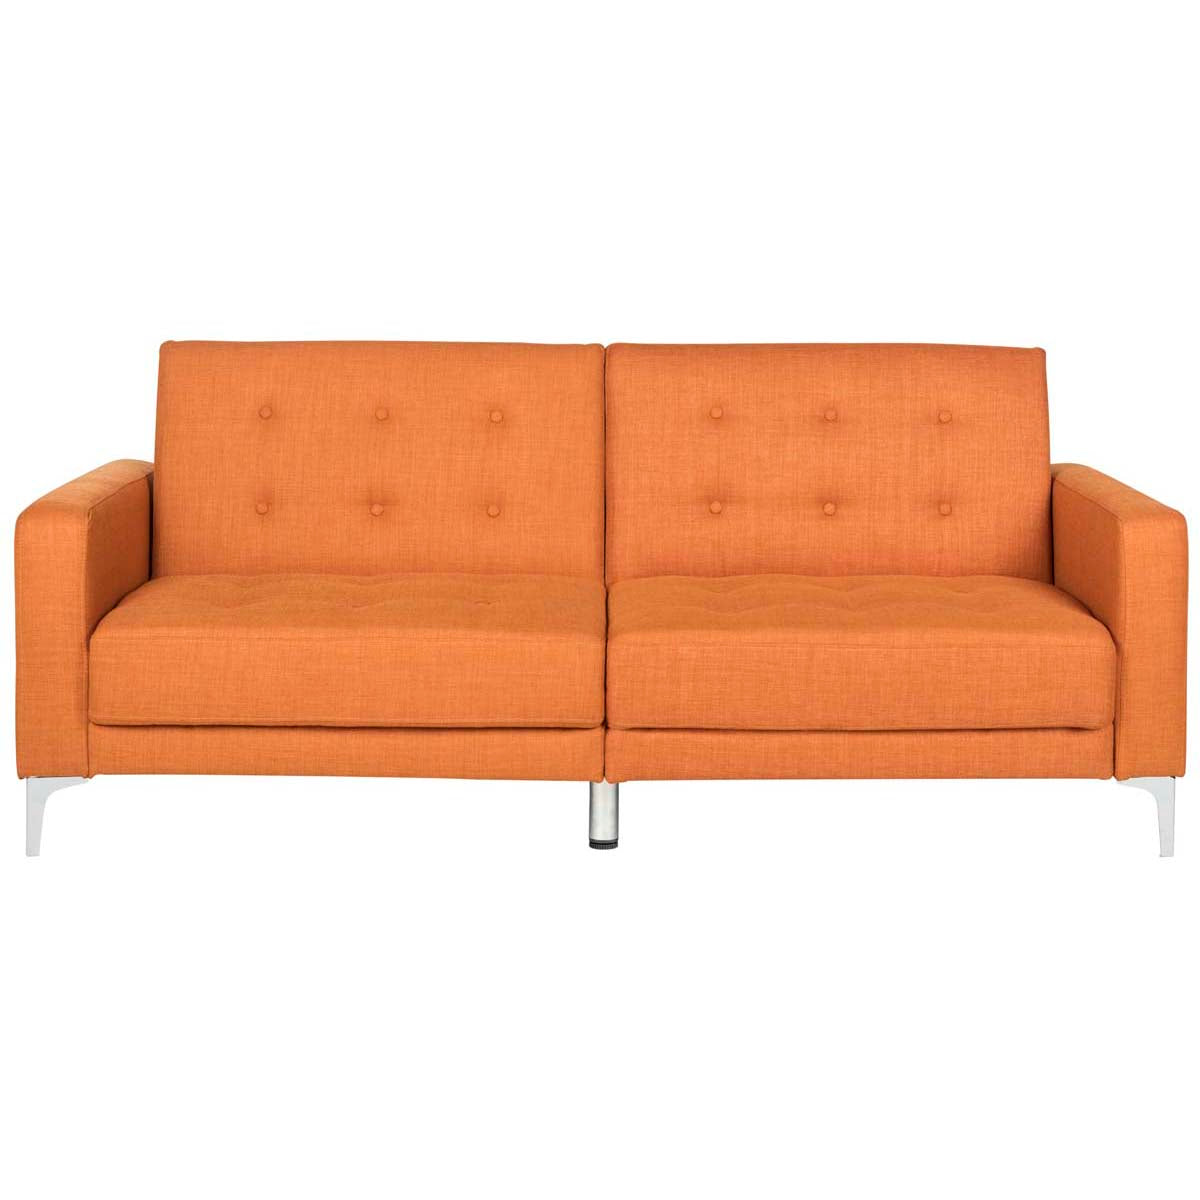 Safavieh Soho Tufted Foldable Sofa Bed , LVS2000